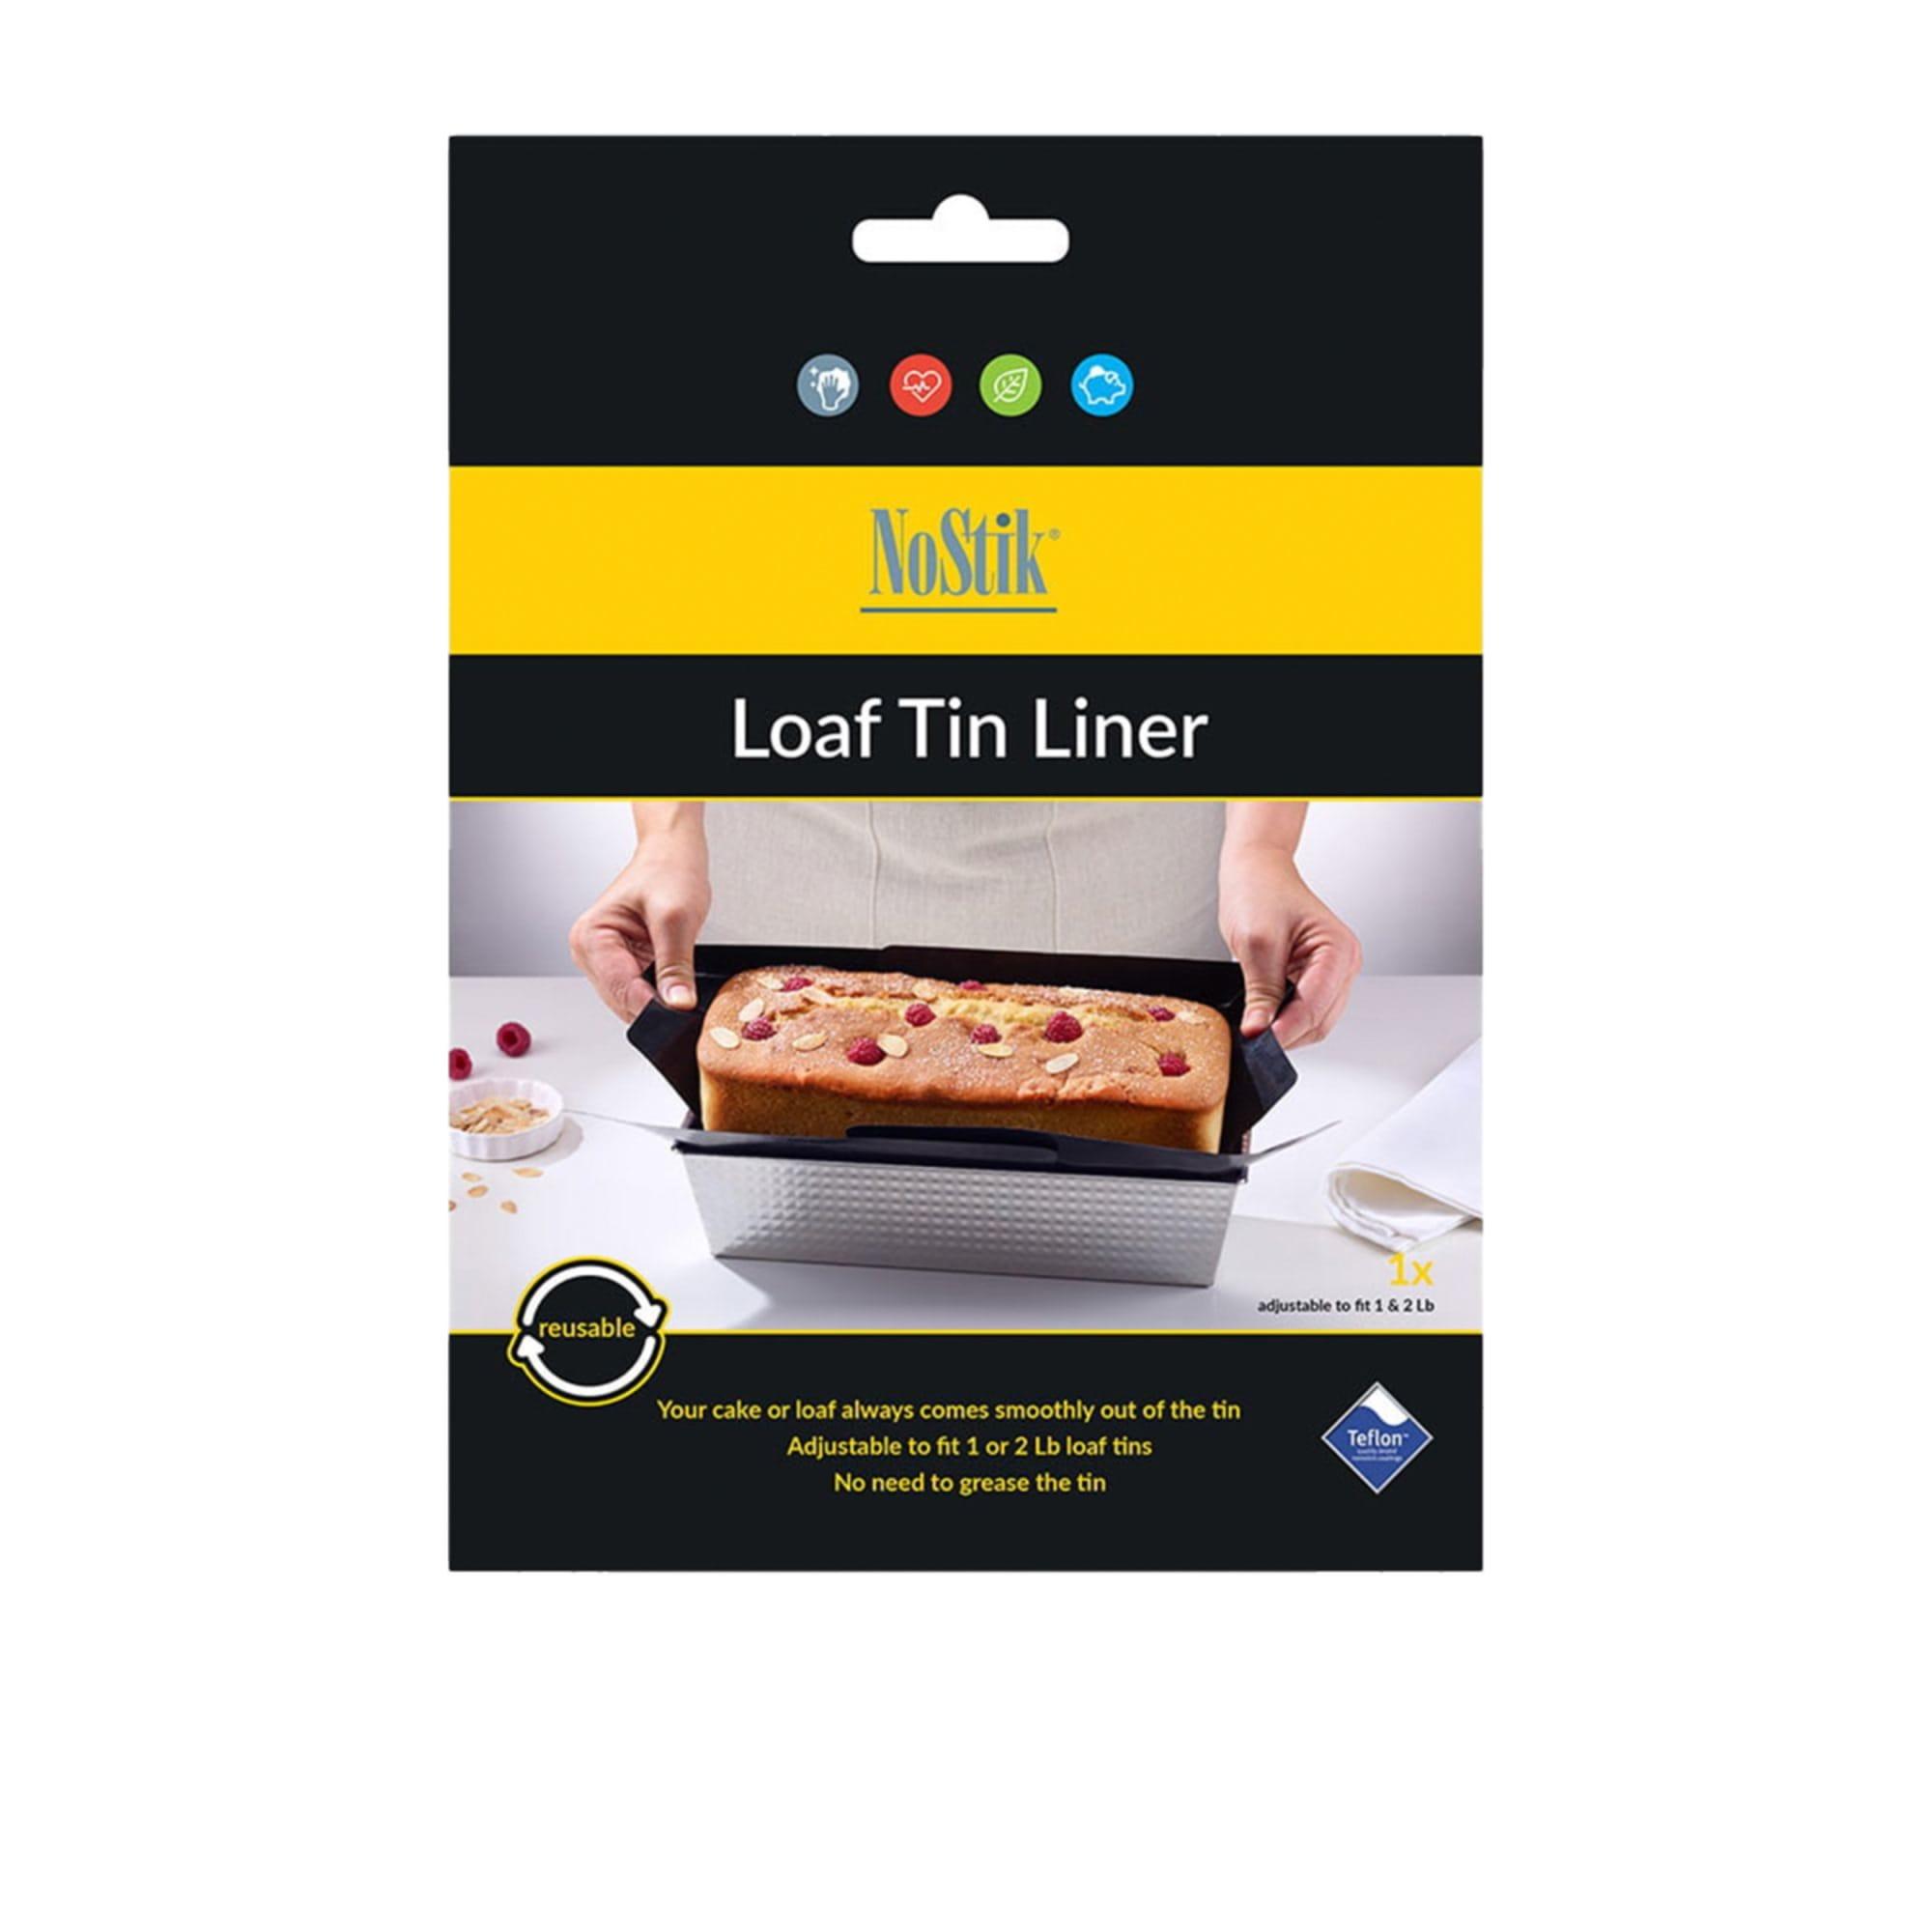 NoStik Loaf Tin Liner Image 1